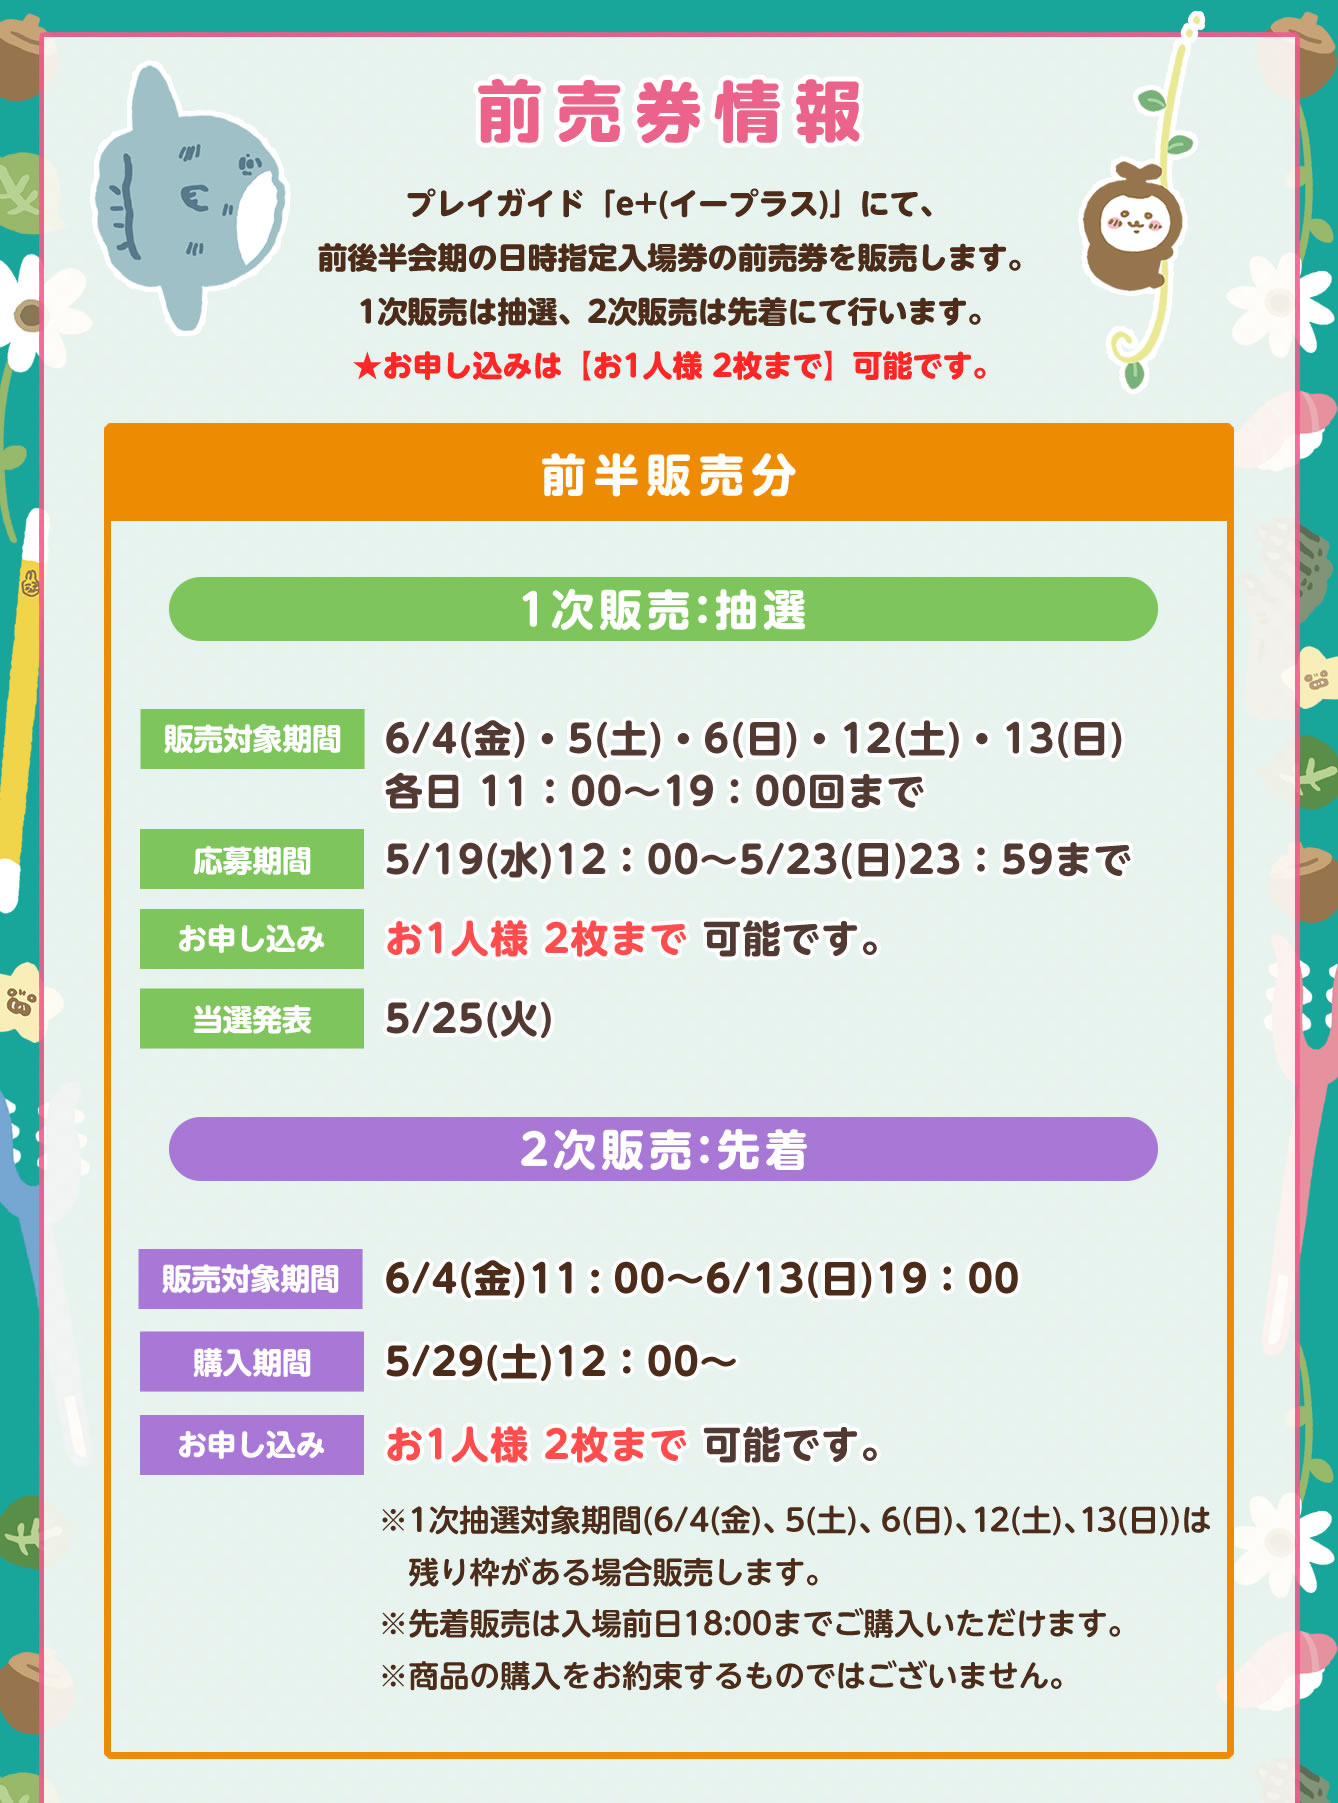 ちいかわ展 in 池袋パルコ 6月4日〜6月27日「ちいかわの森」開催!